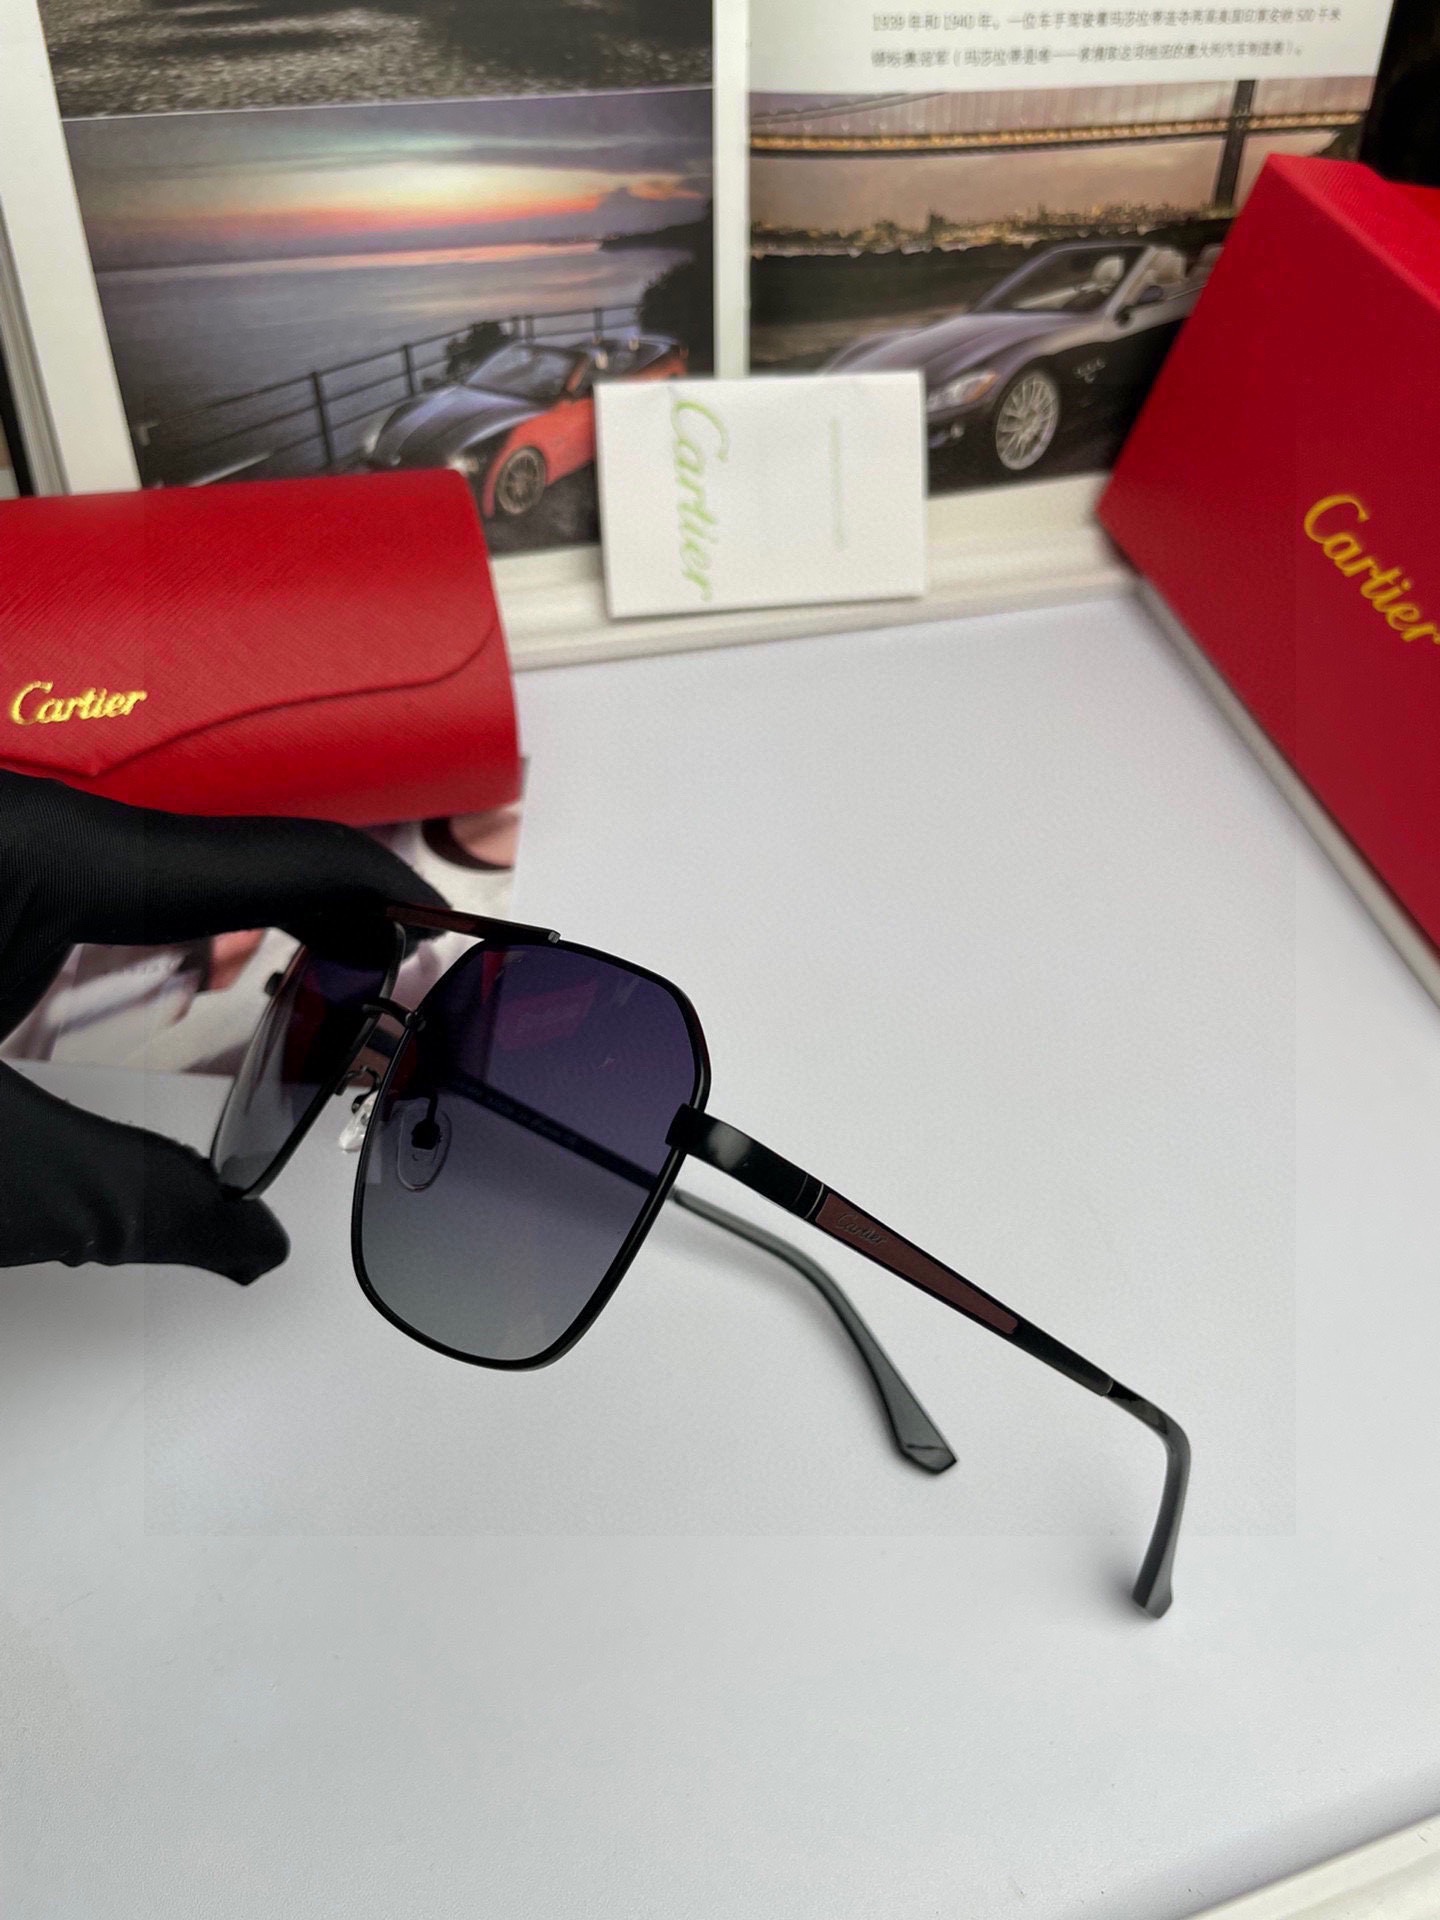 新款品牌卡地亚Cartier原单品质男士女士同款偏光太阳镜️材质高清尼龙镜片金属合金logo镜腿看细节就